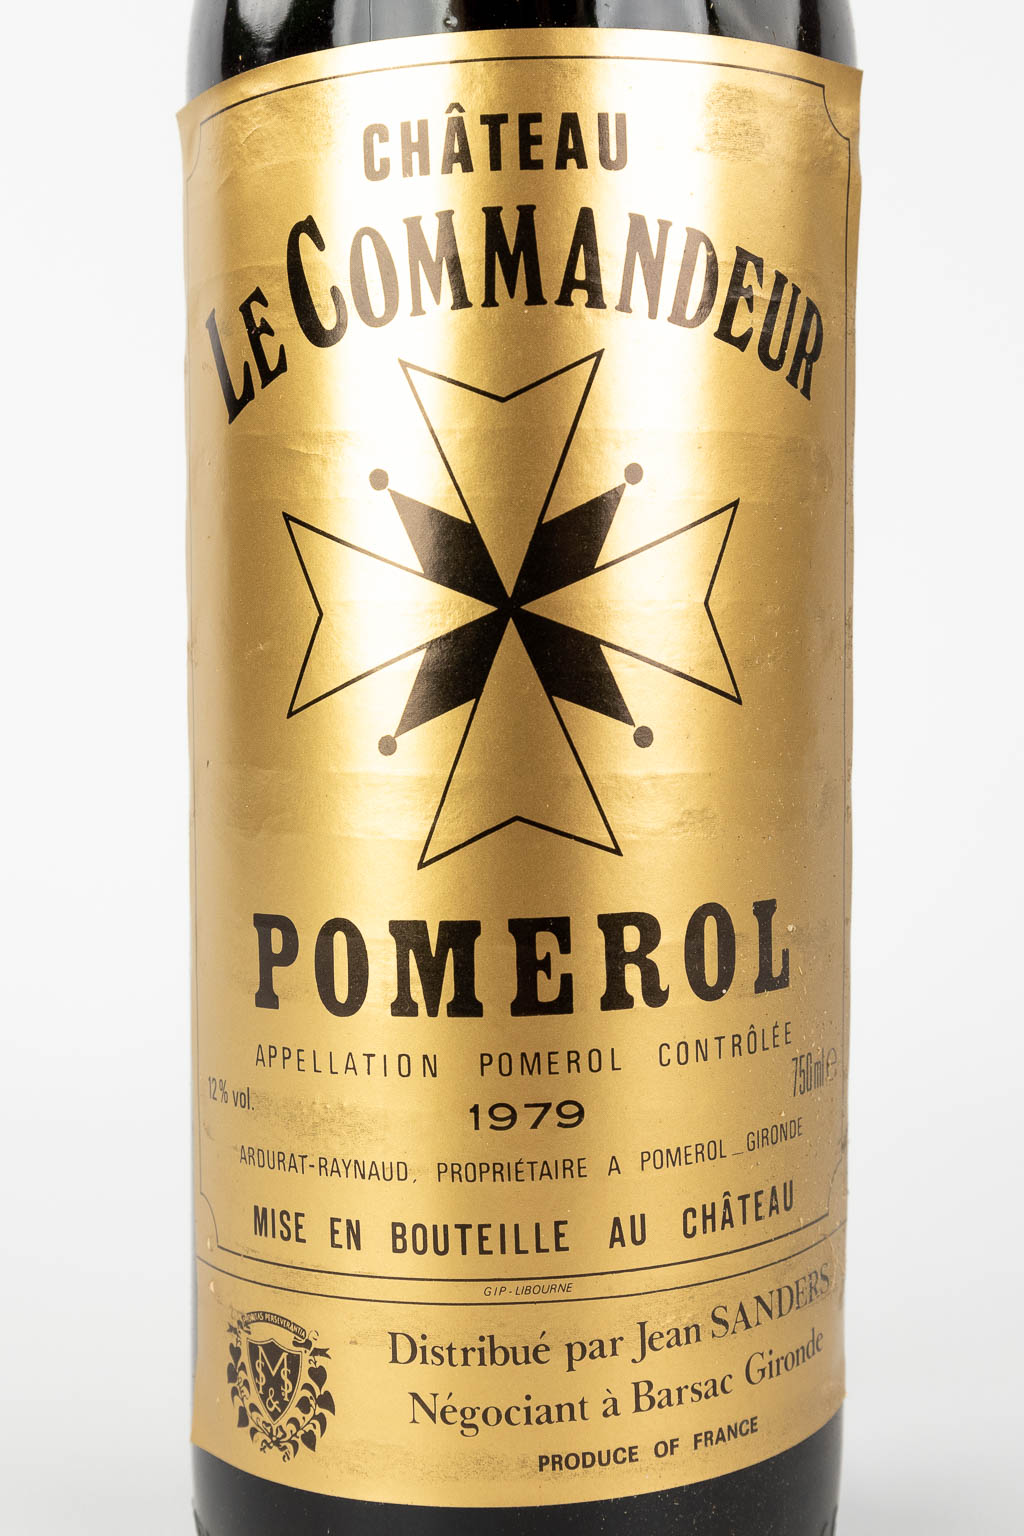 Château Commandeur Pomerol, 1979, een collectie van 9 flessen in de originele kist.